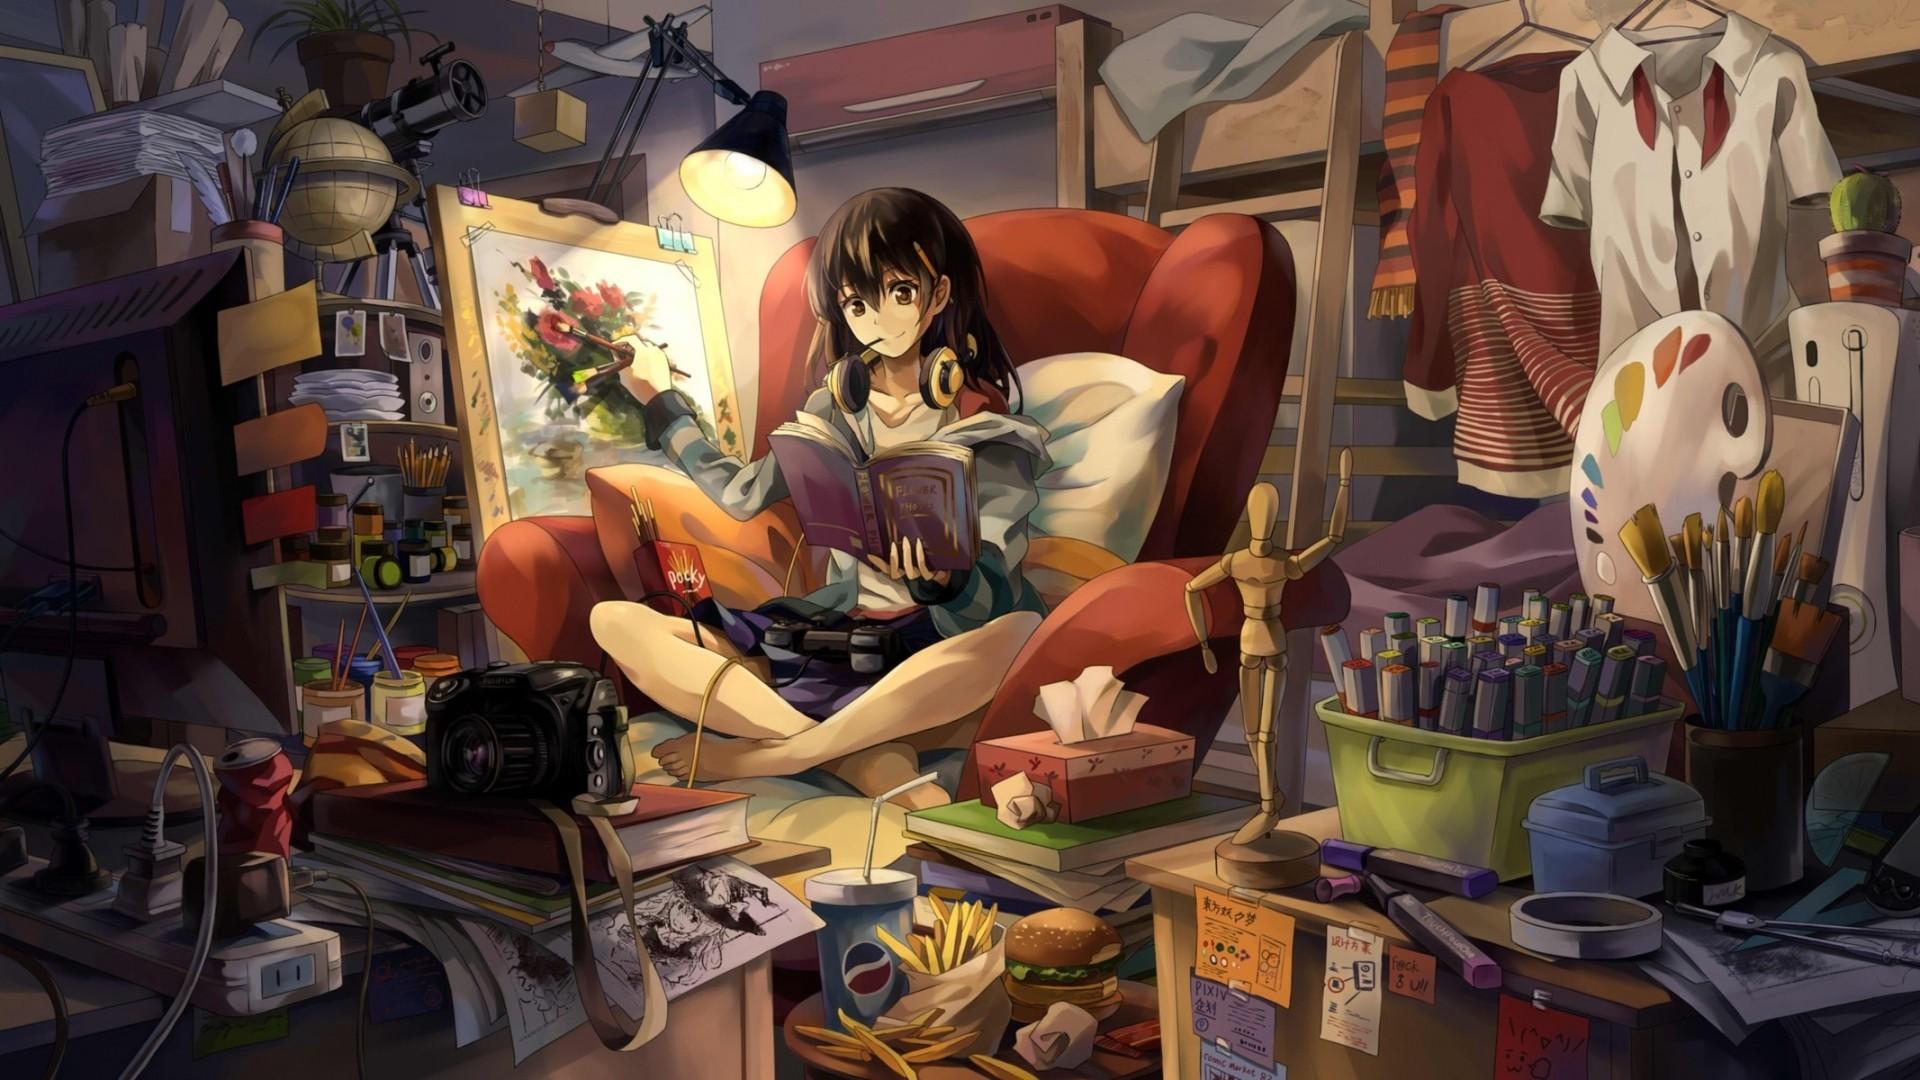 Hd girl wallpaper anime gamer 